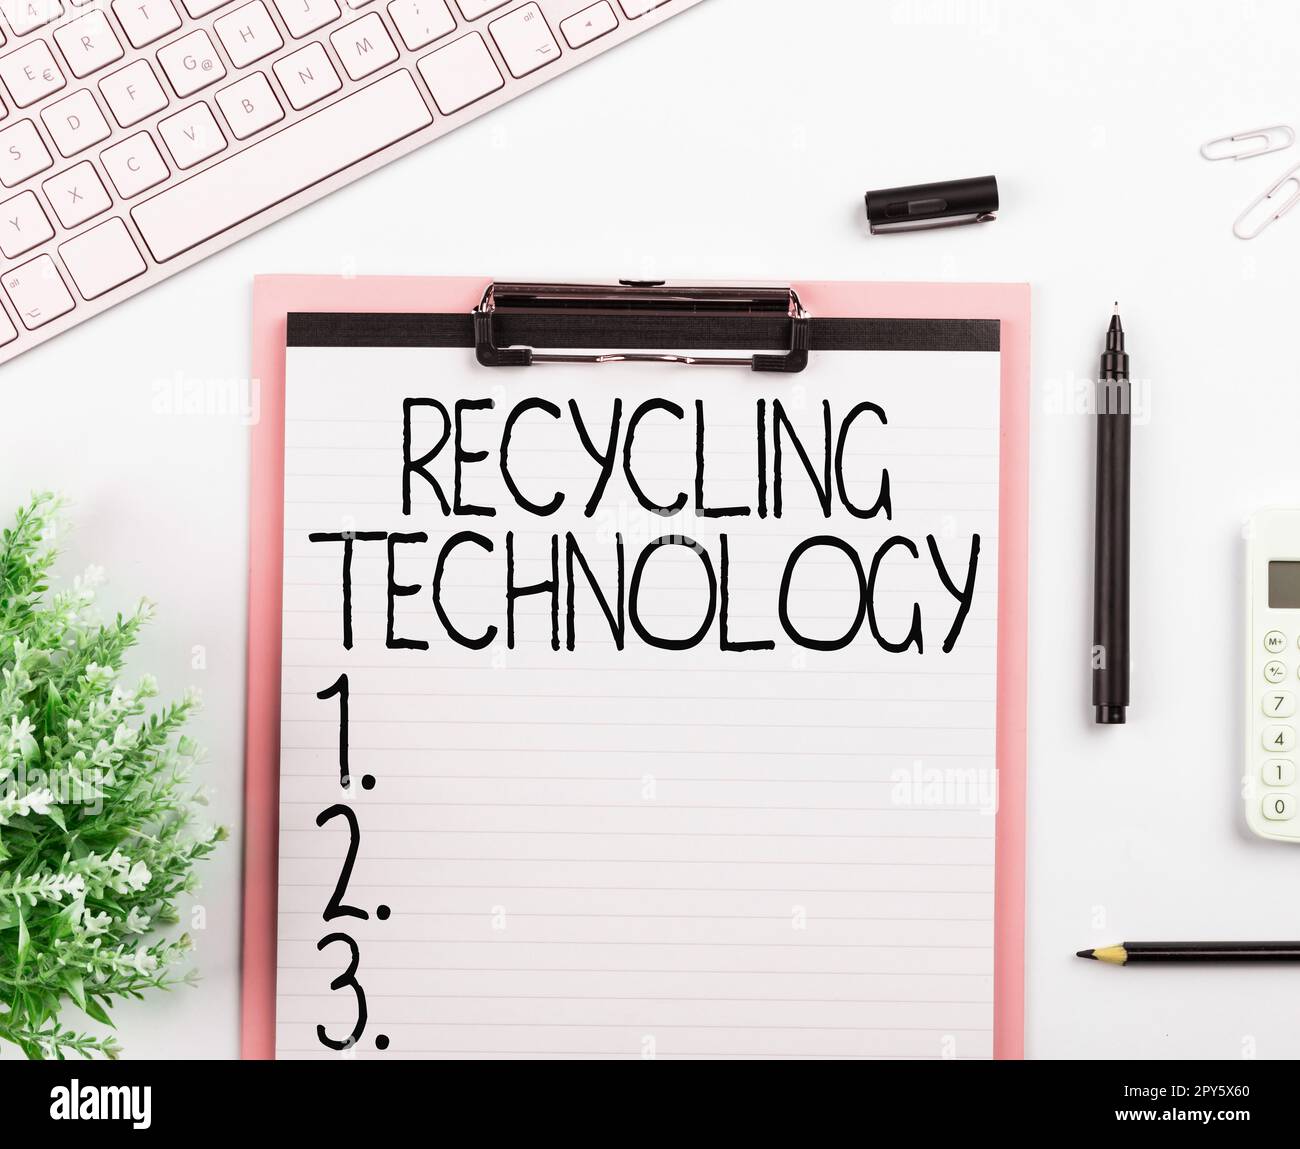 Didascalia di testo che presenta la tecnologia di riciclaggio. Concetto di Internet i metodi per ridurre i rifiuti solidi Foto Stock